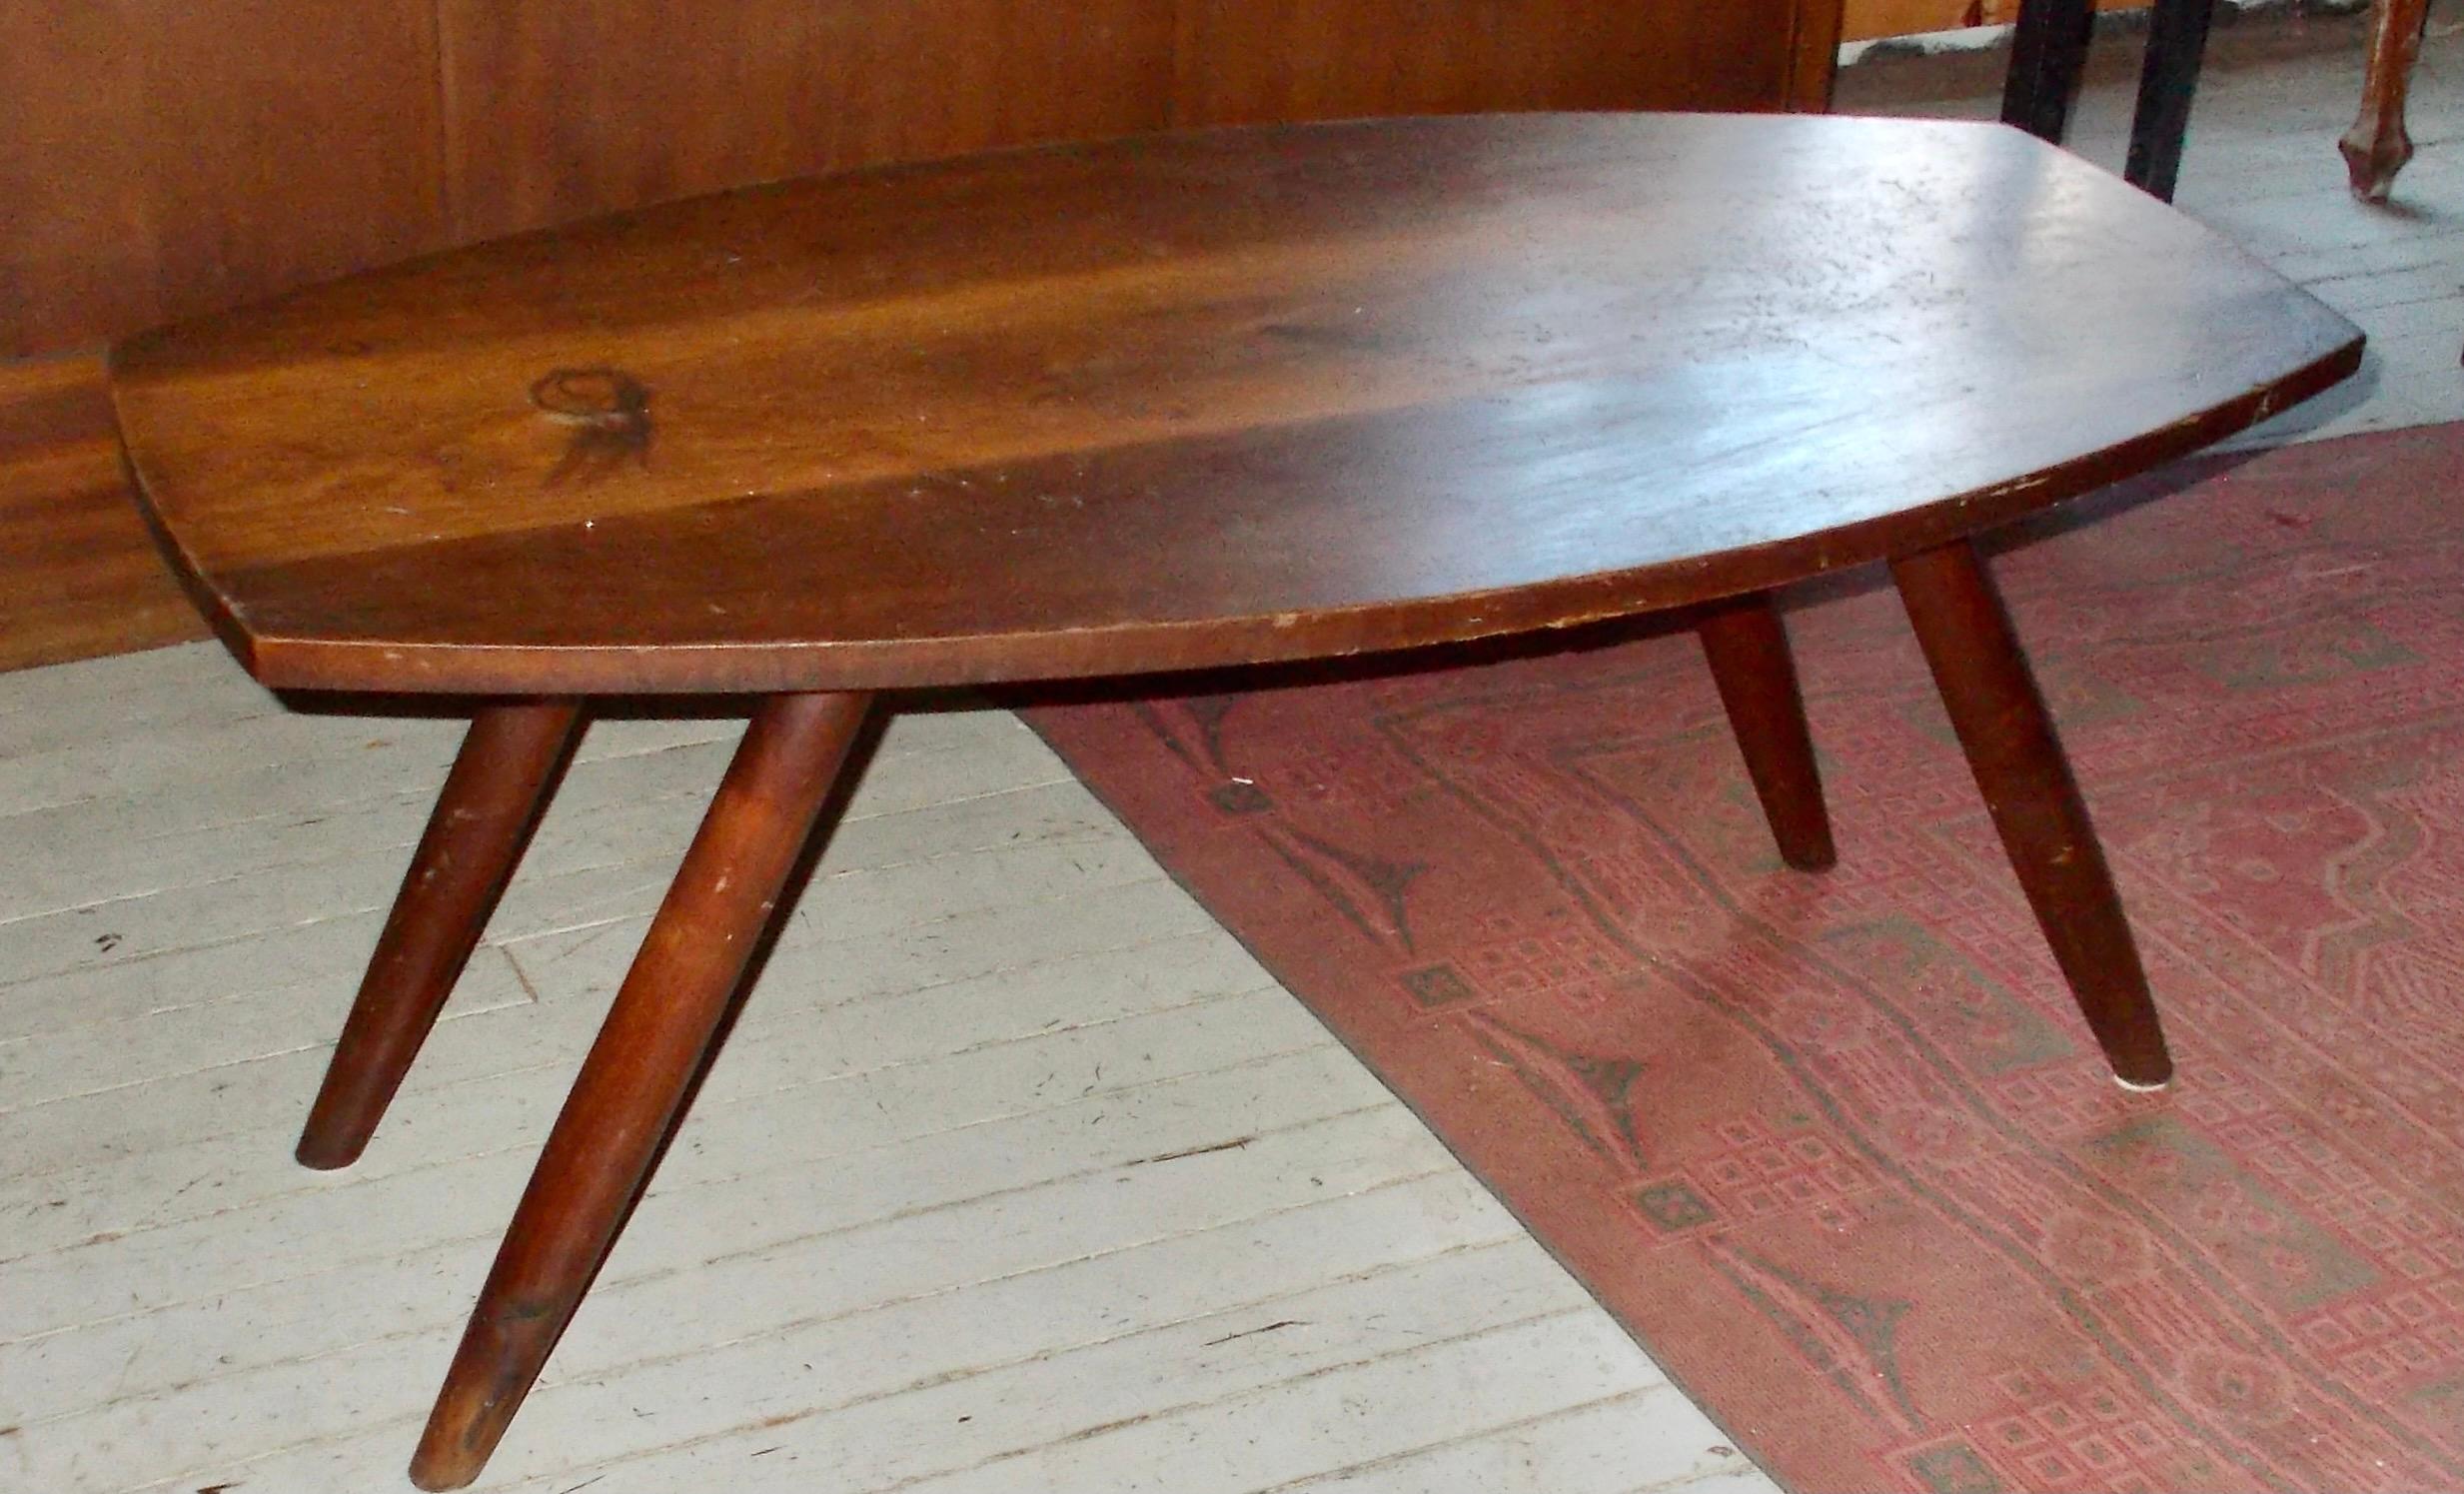 Ein früher Nakashima-Tisch mit gedrechselten Beinen aus den späten 40er/frühen 50er Jahren, unberührt und mit Originallackierung. Die typischen gebogenen Beine mit rundem Querschnitt sind sehr geschickt und sicher am Boden befestigt. Unmarkiert.